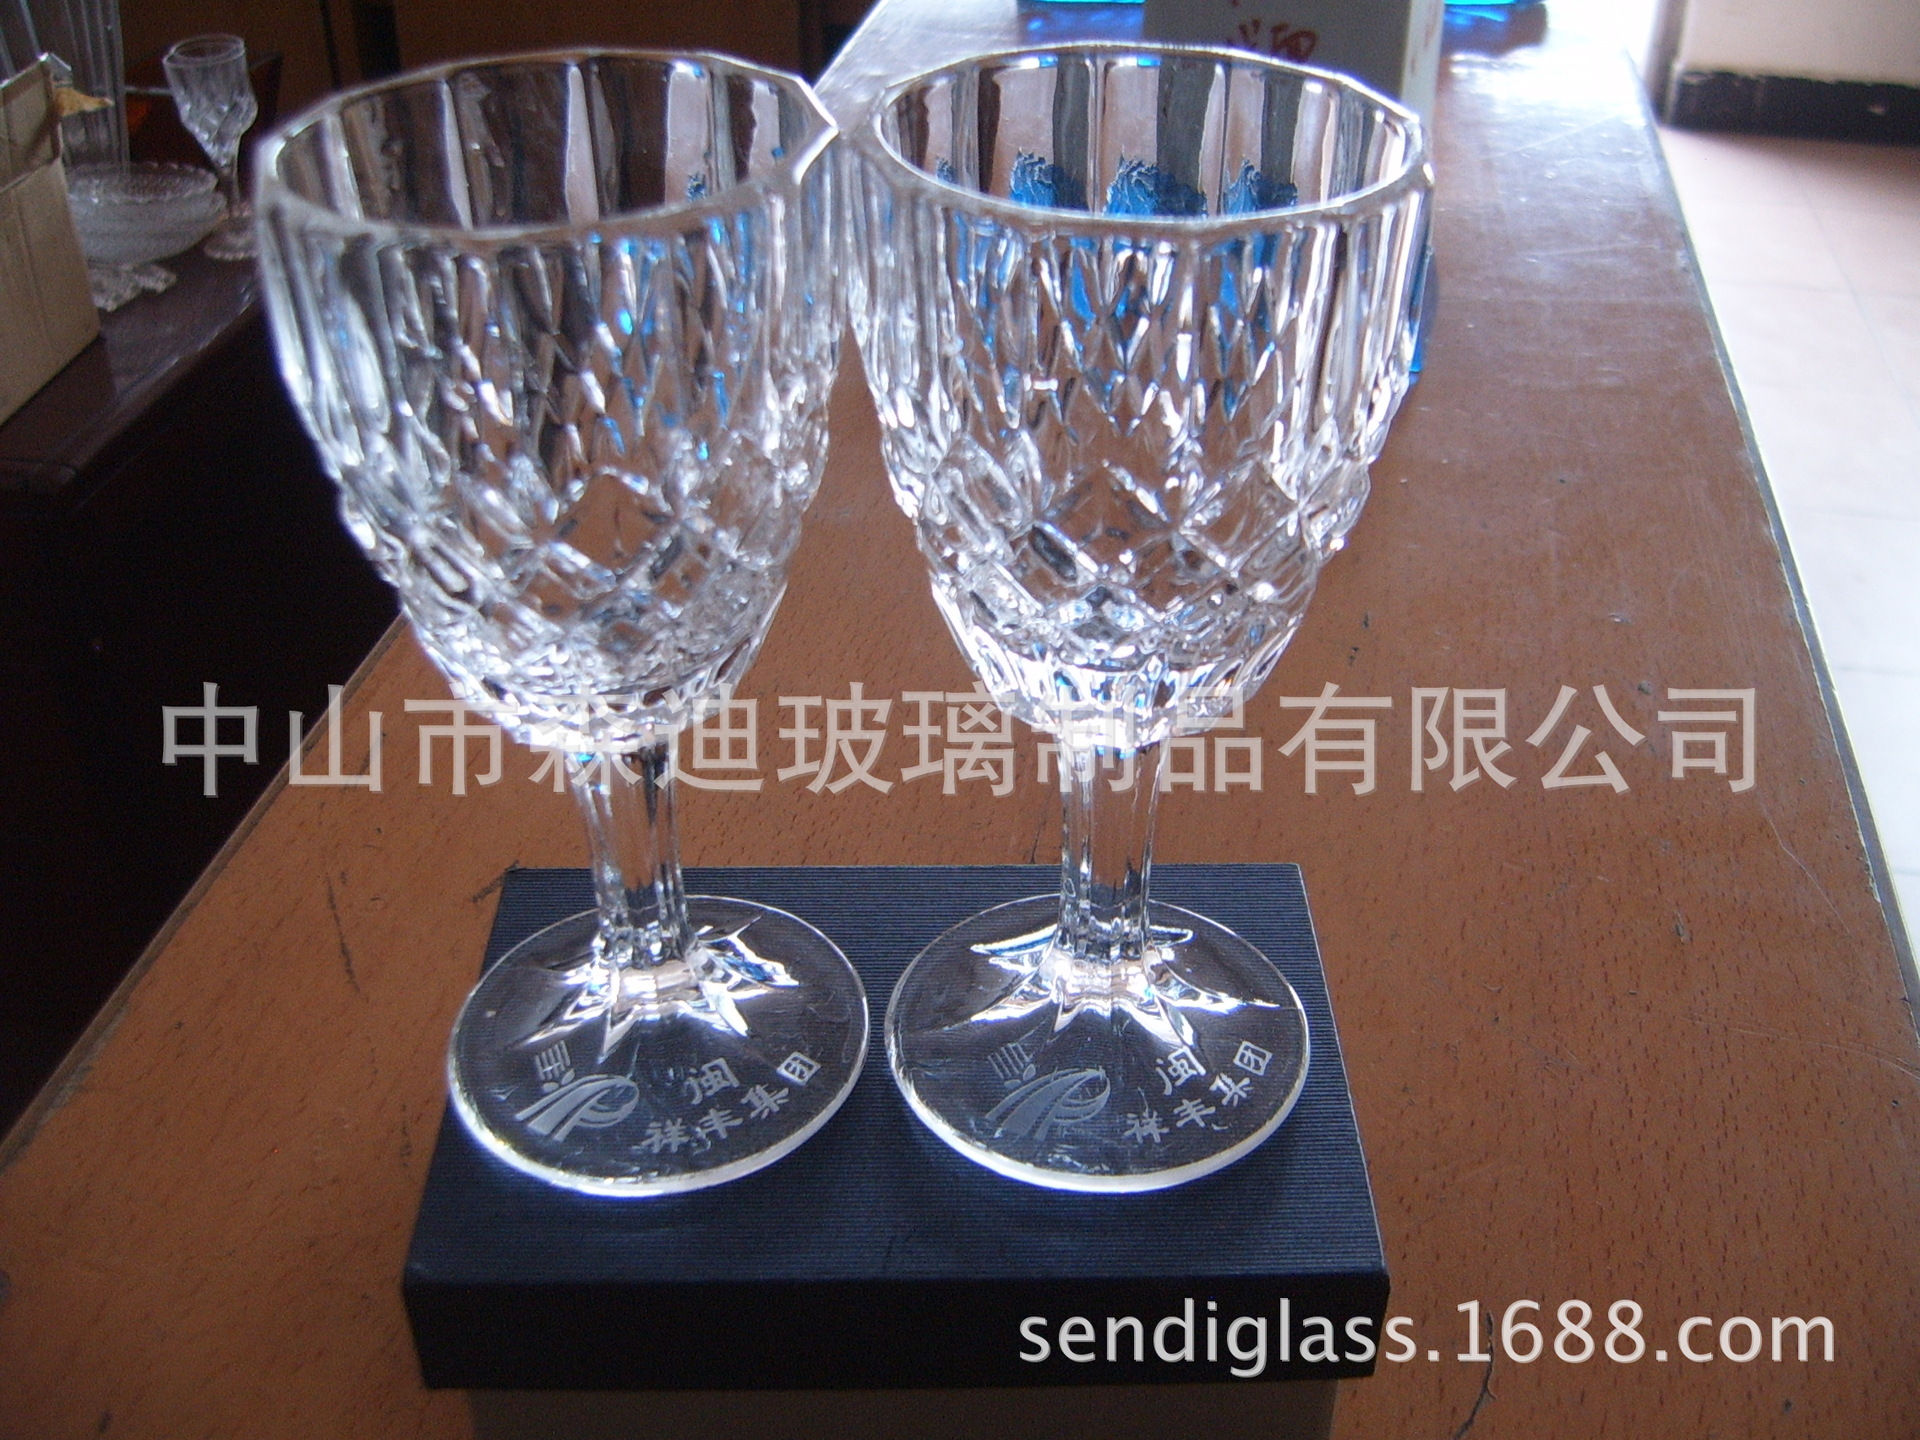 厂家直销波西米亚风格水晶玻璃高脚酒杯礼品套装可定制印LOGO